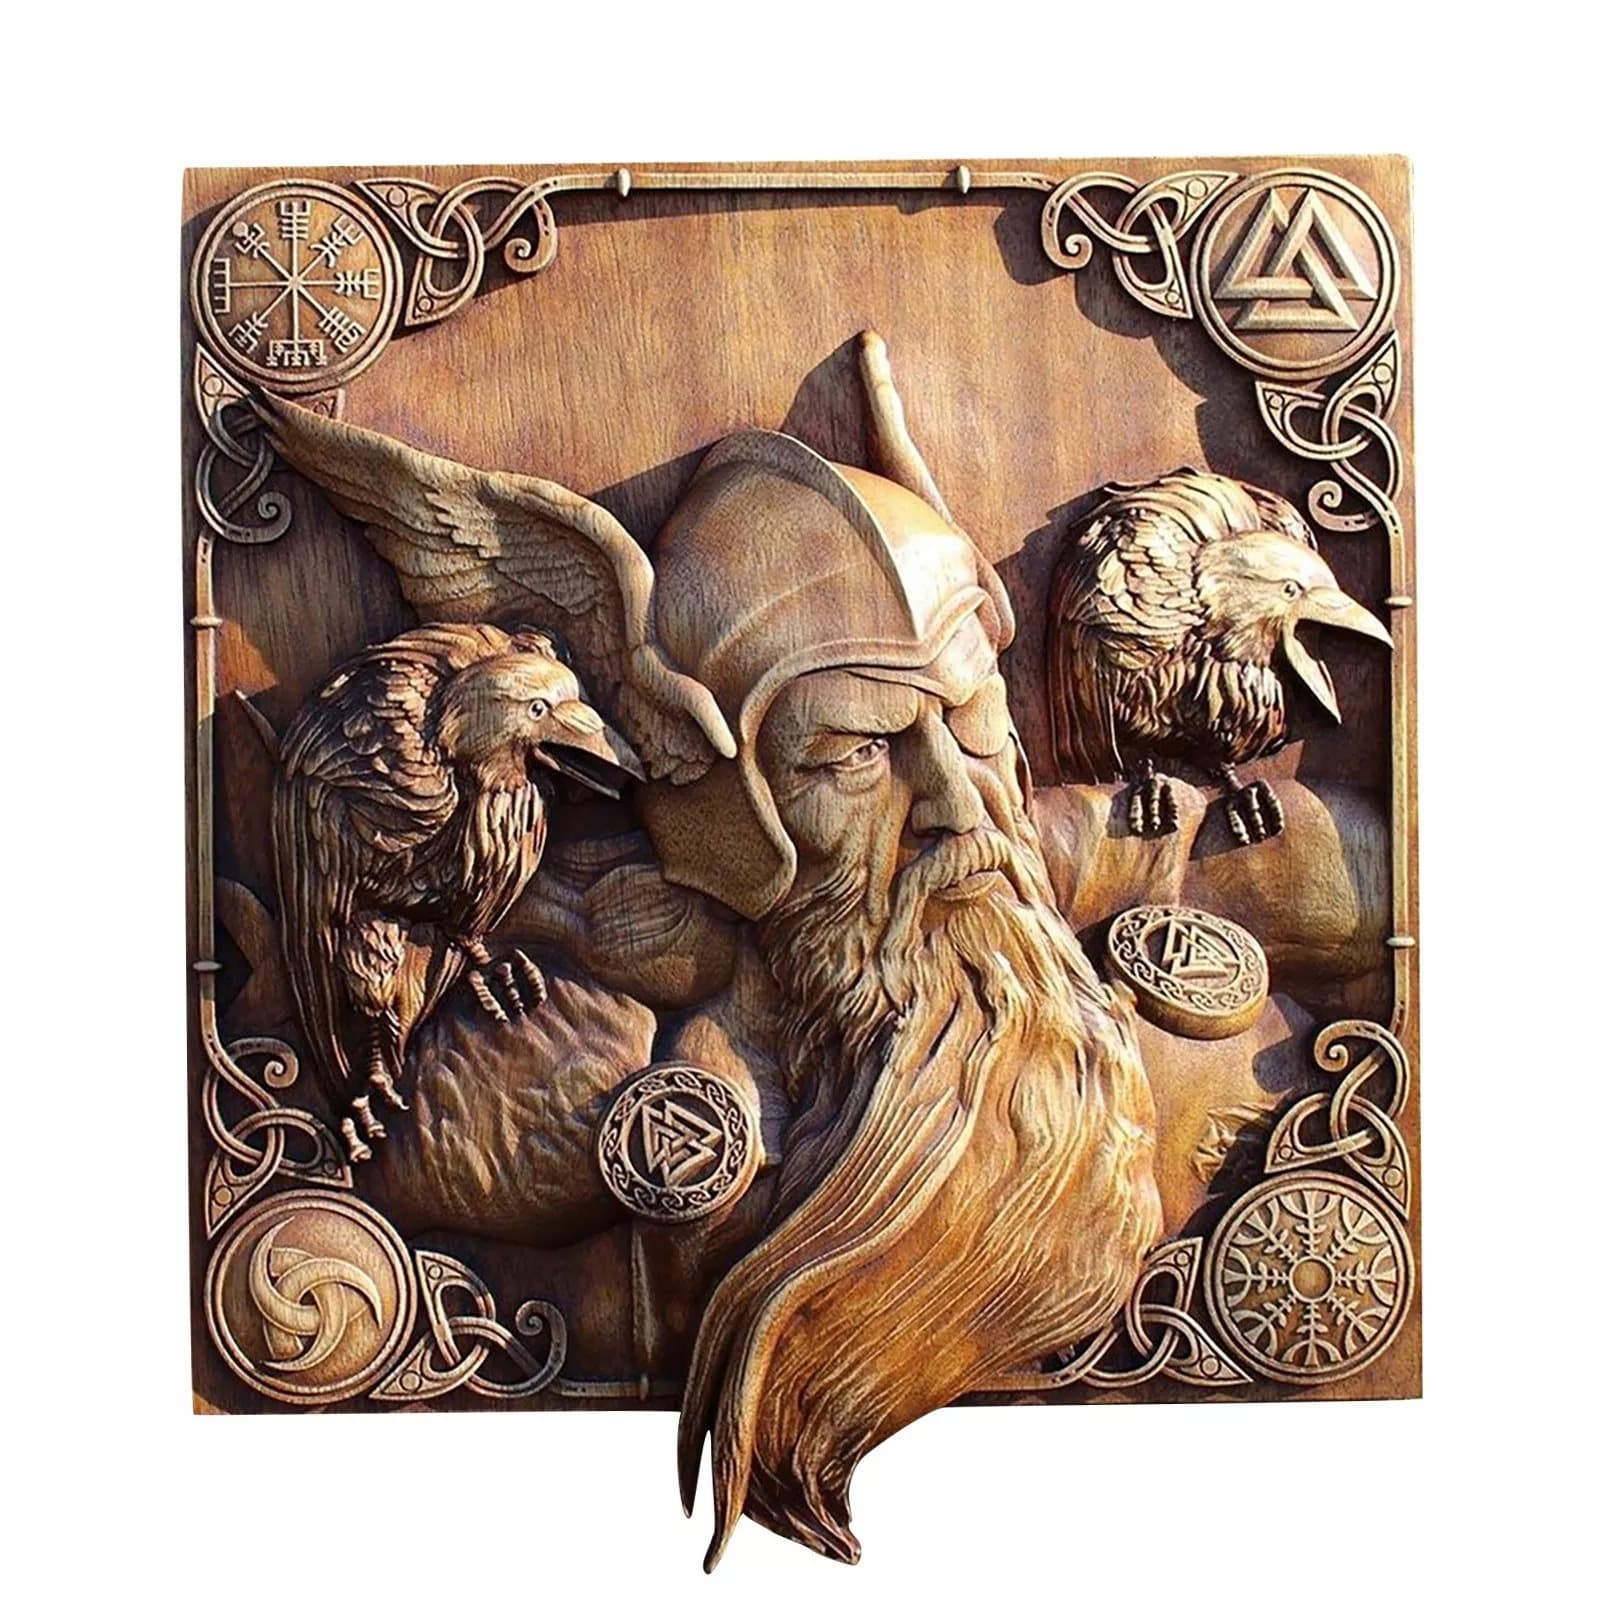 Viking Decorations Home, Vikings Norse Mythology